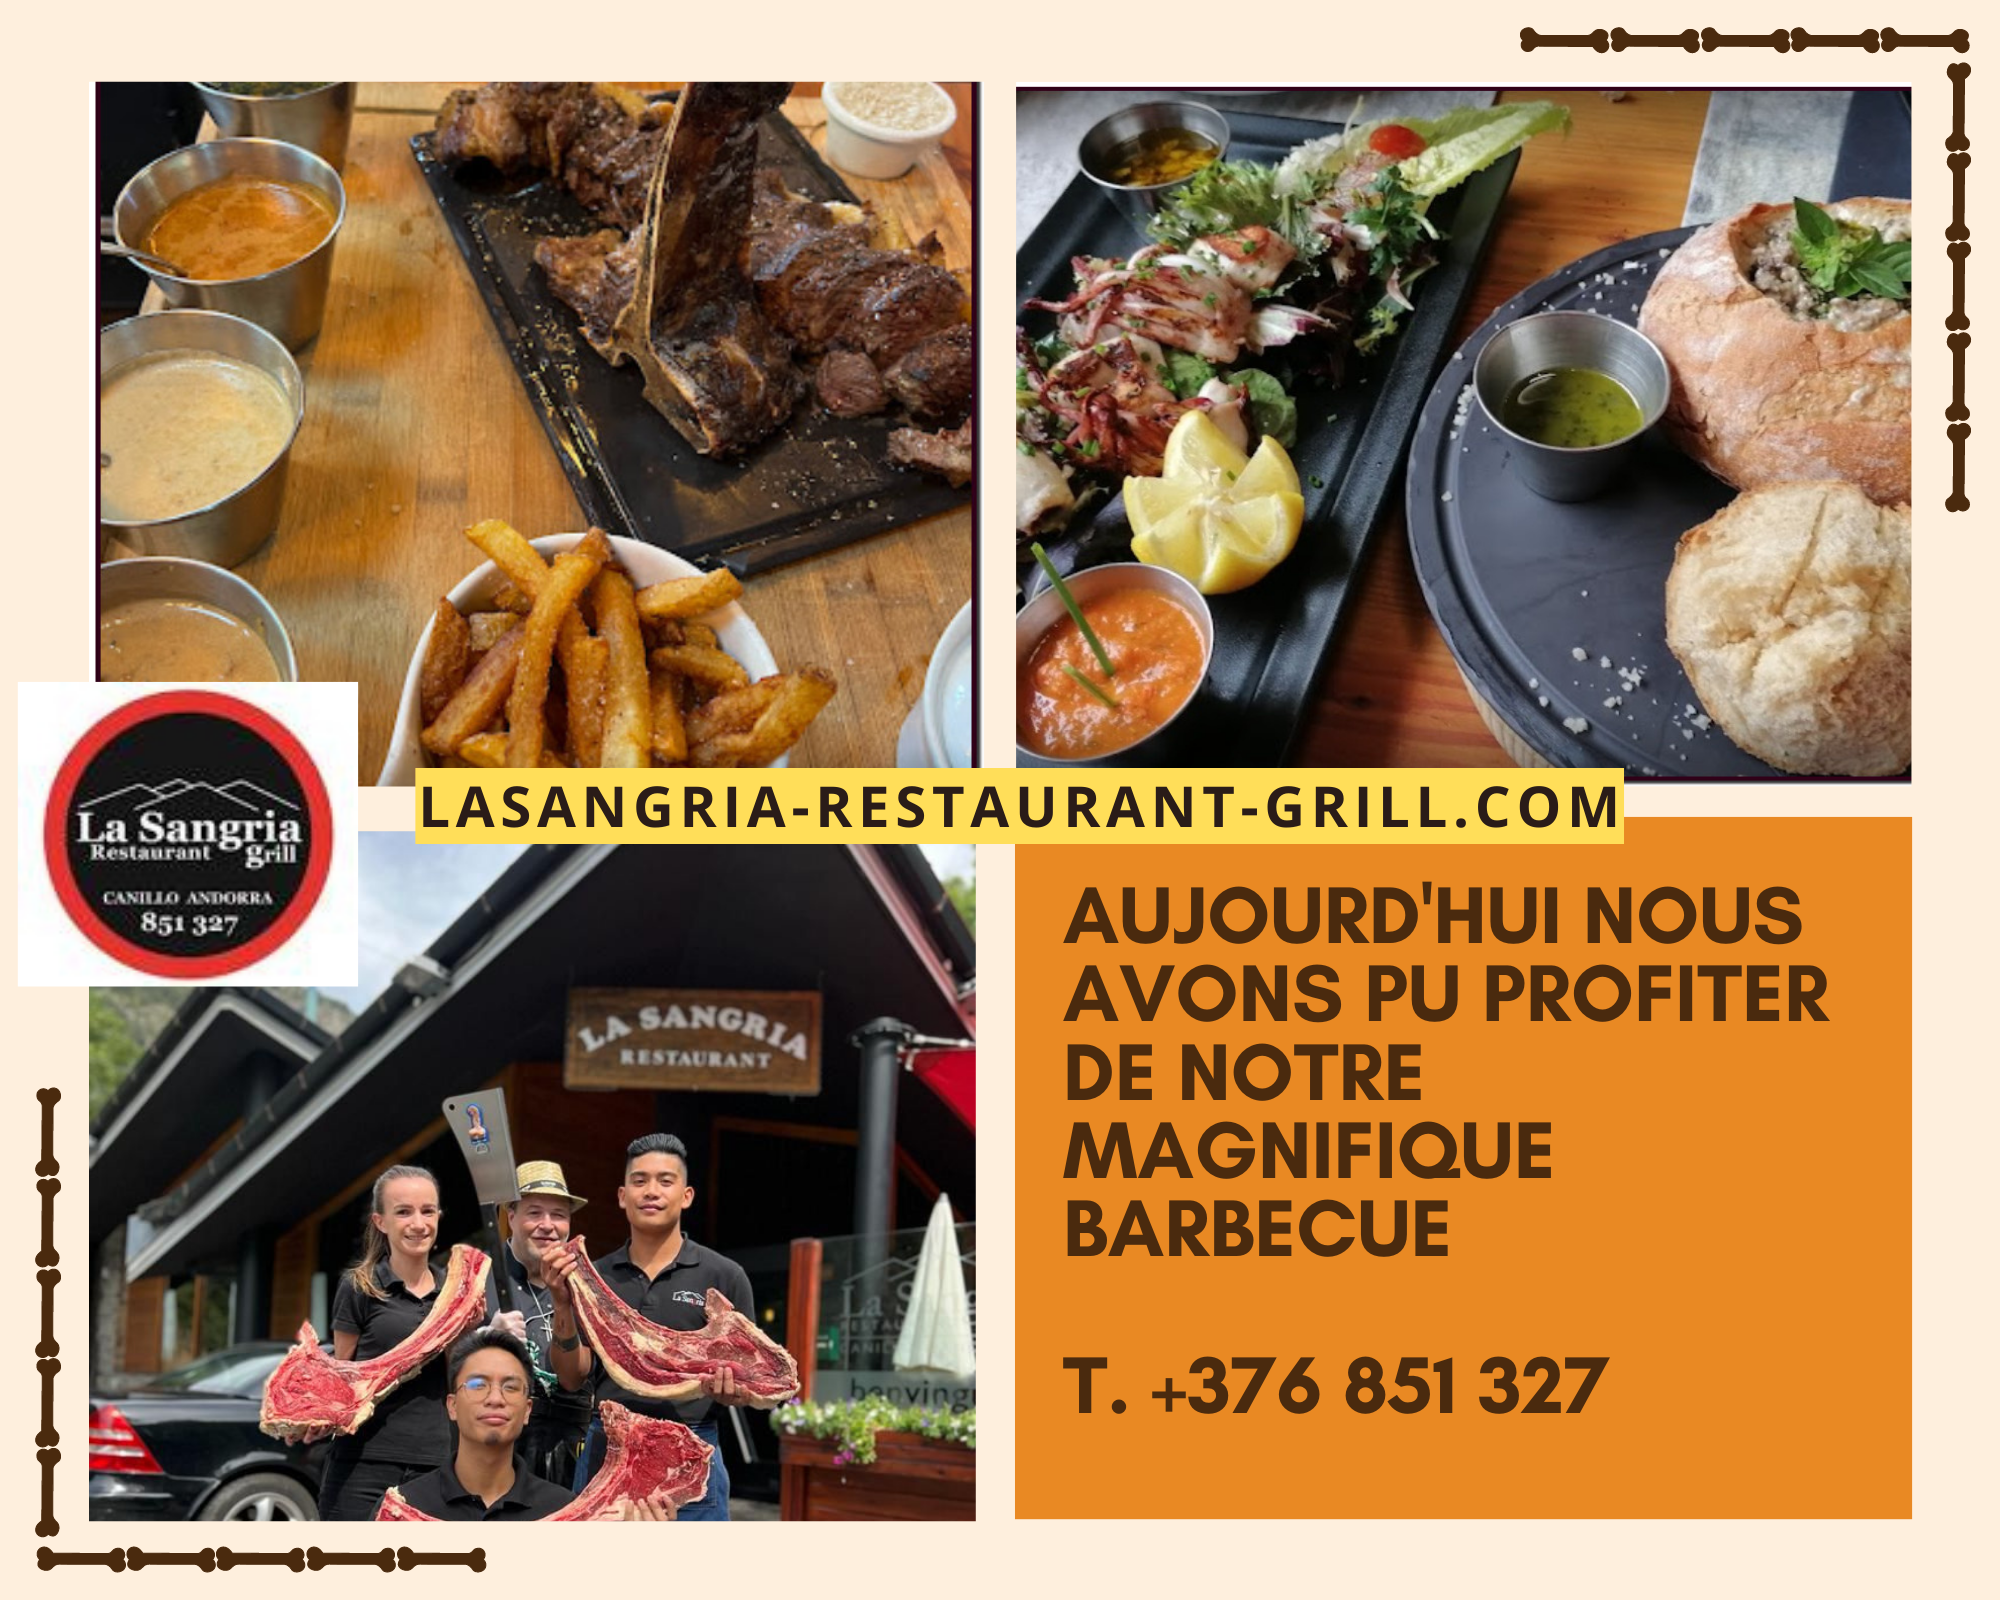 La Sangria Grill Restaurant. Aujourd'hui, nous avons pu profiter de notre magnifique barbecue, surtout le meilleur Tomahawk d'Andorre. Réservations T. +376 851 327